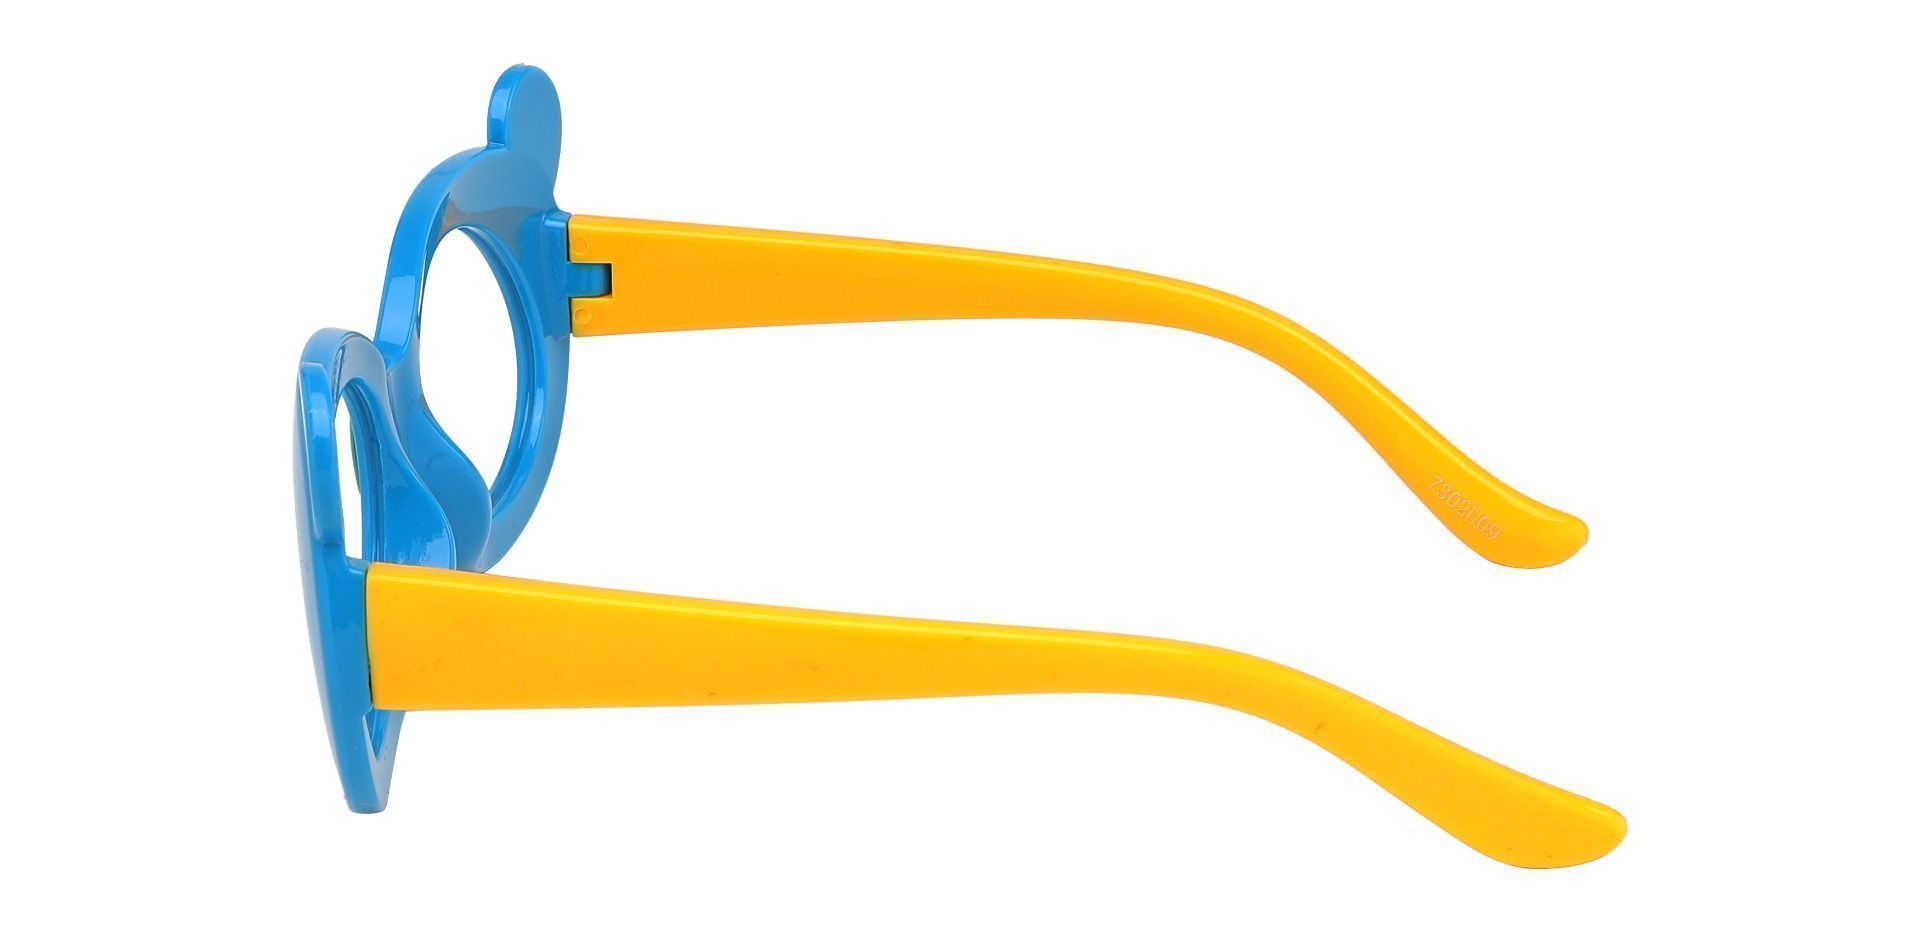 Tito Oval Single Vision Glasses - Blue